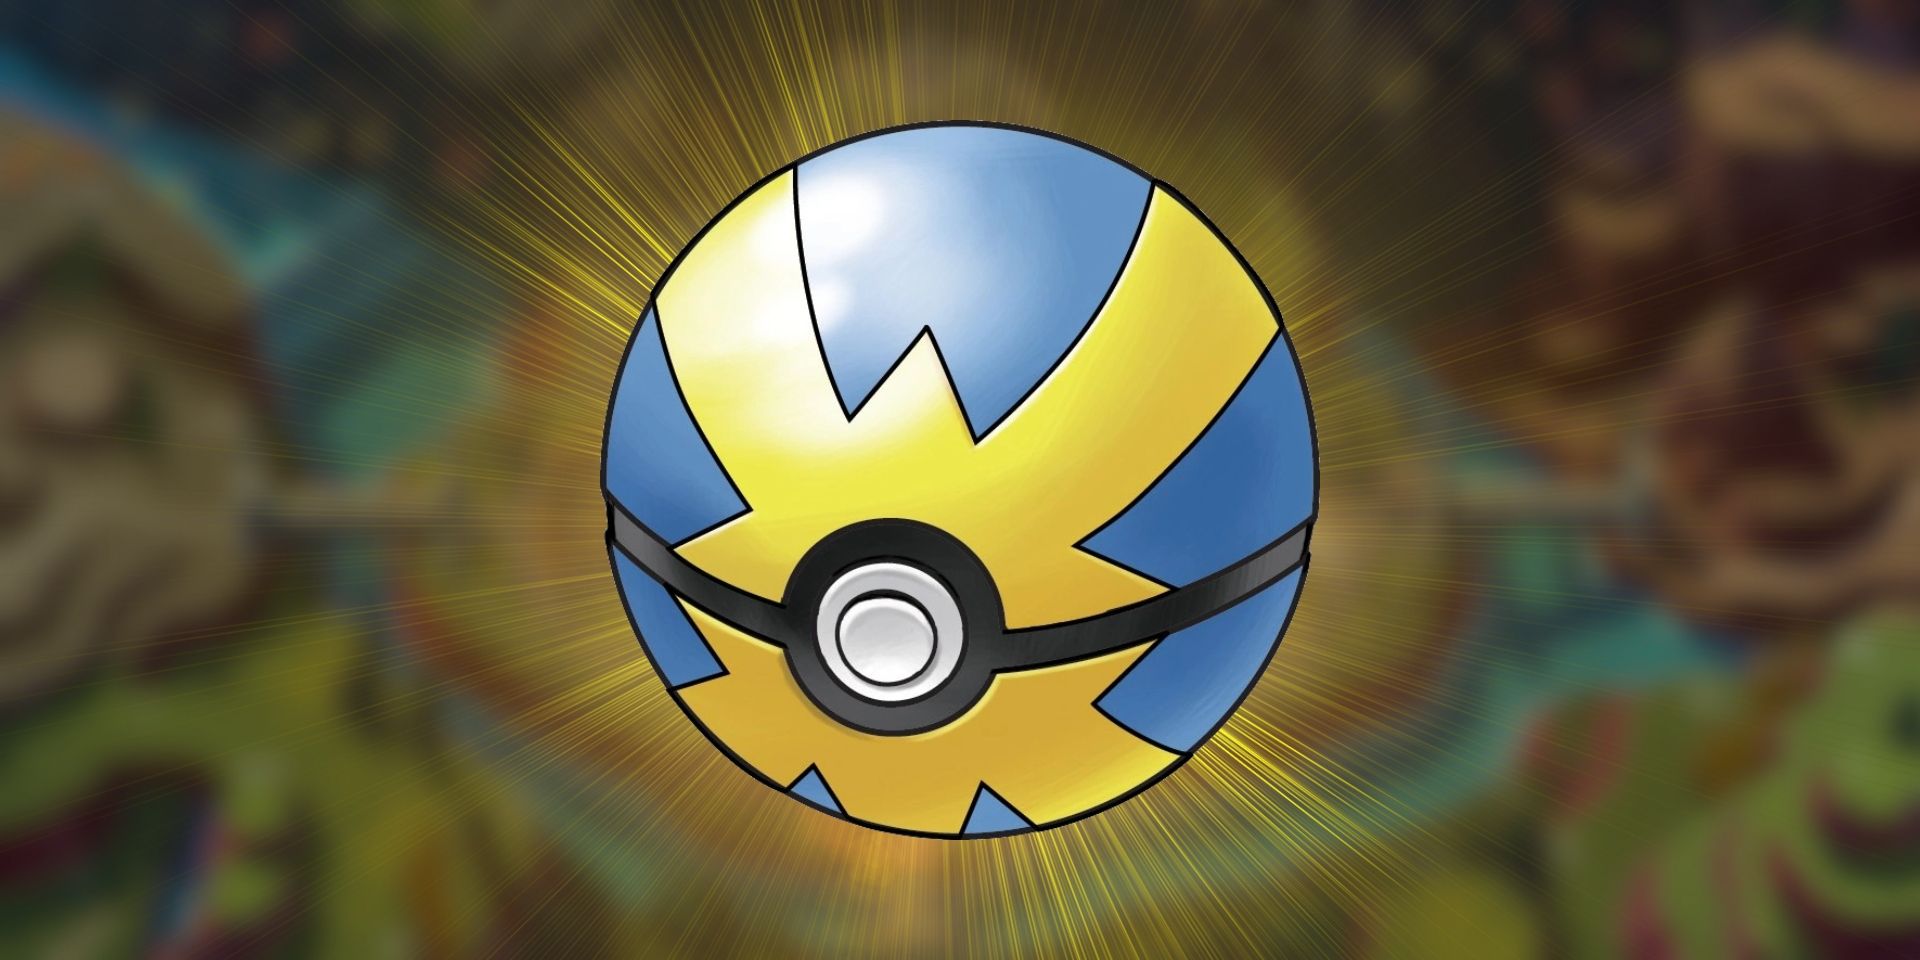 A Quick Ball do Pokémon no meio com uma luz de fundo amarela.  Ao fundo está uma imagem borrada do mapa de Paldea.